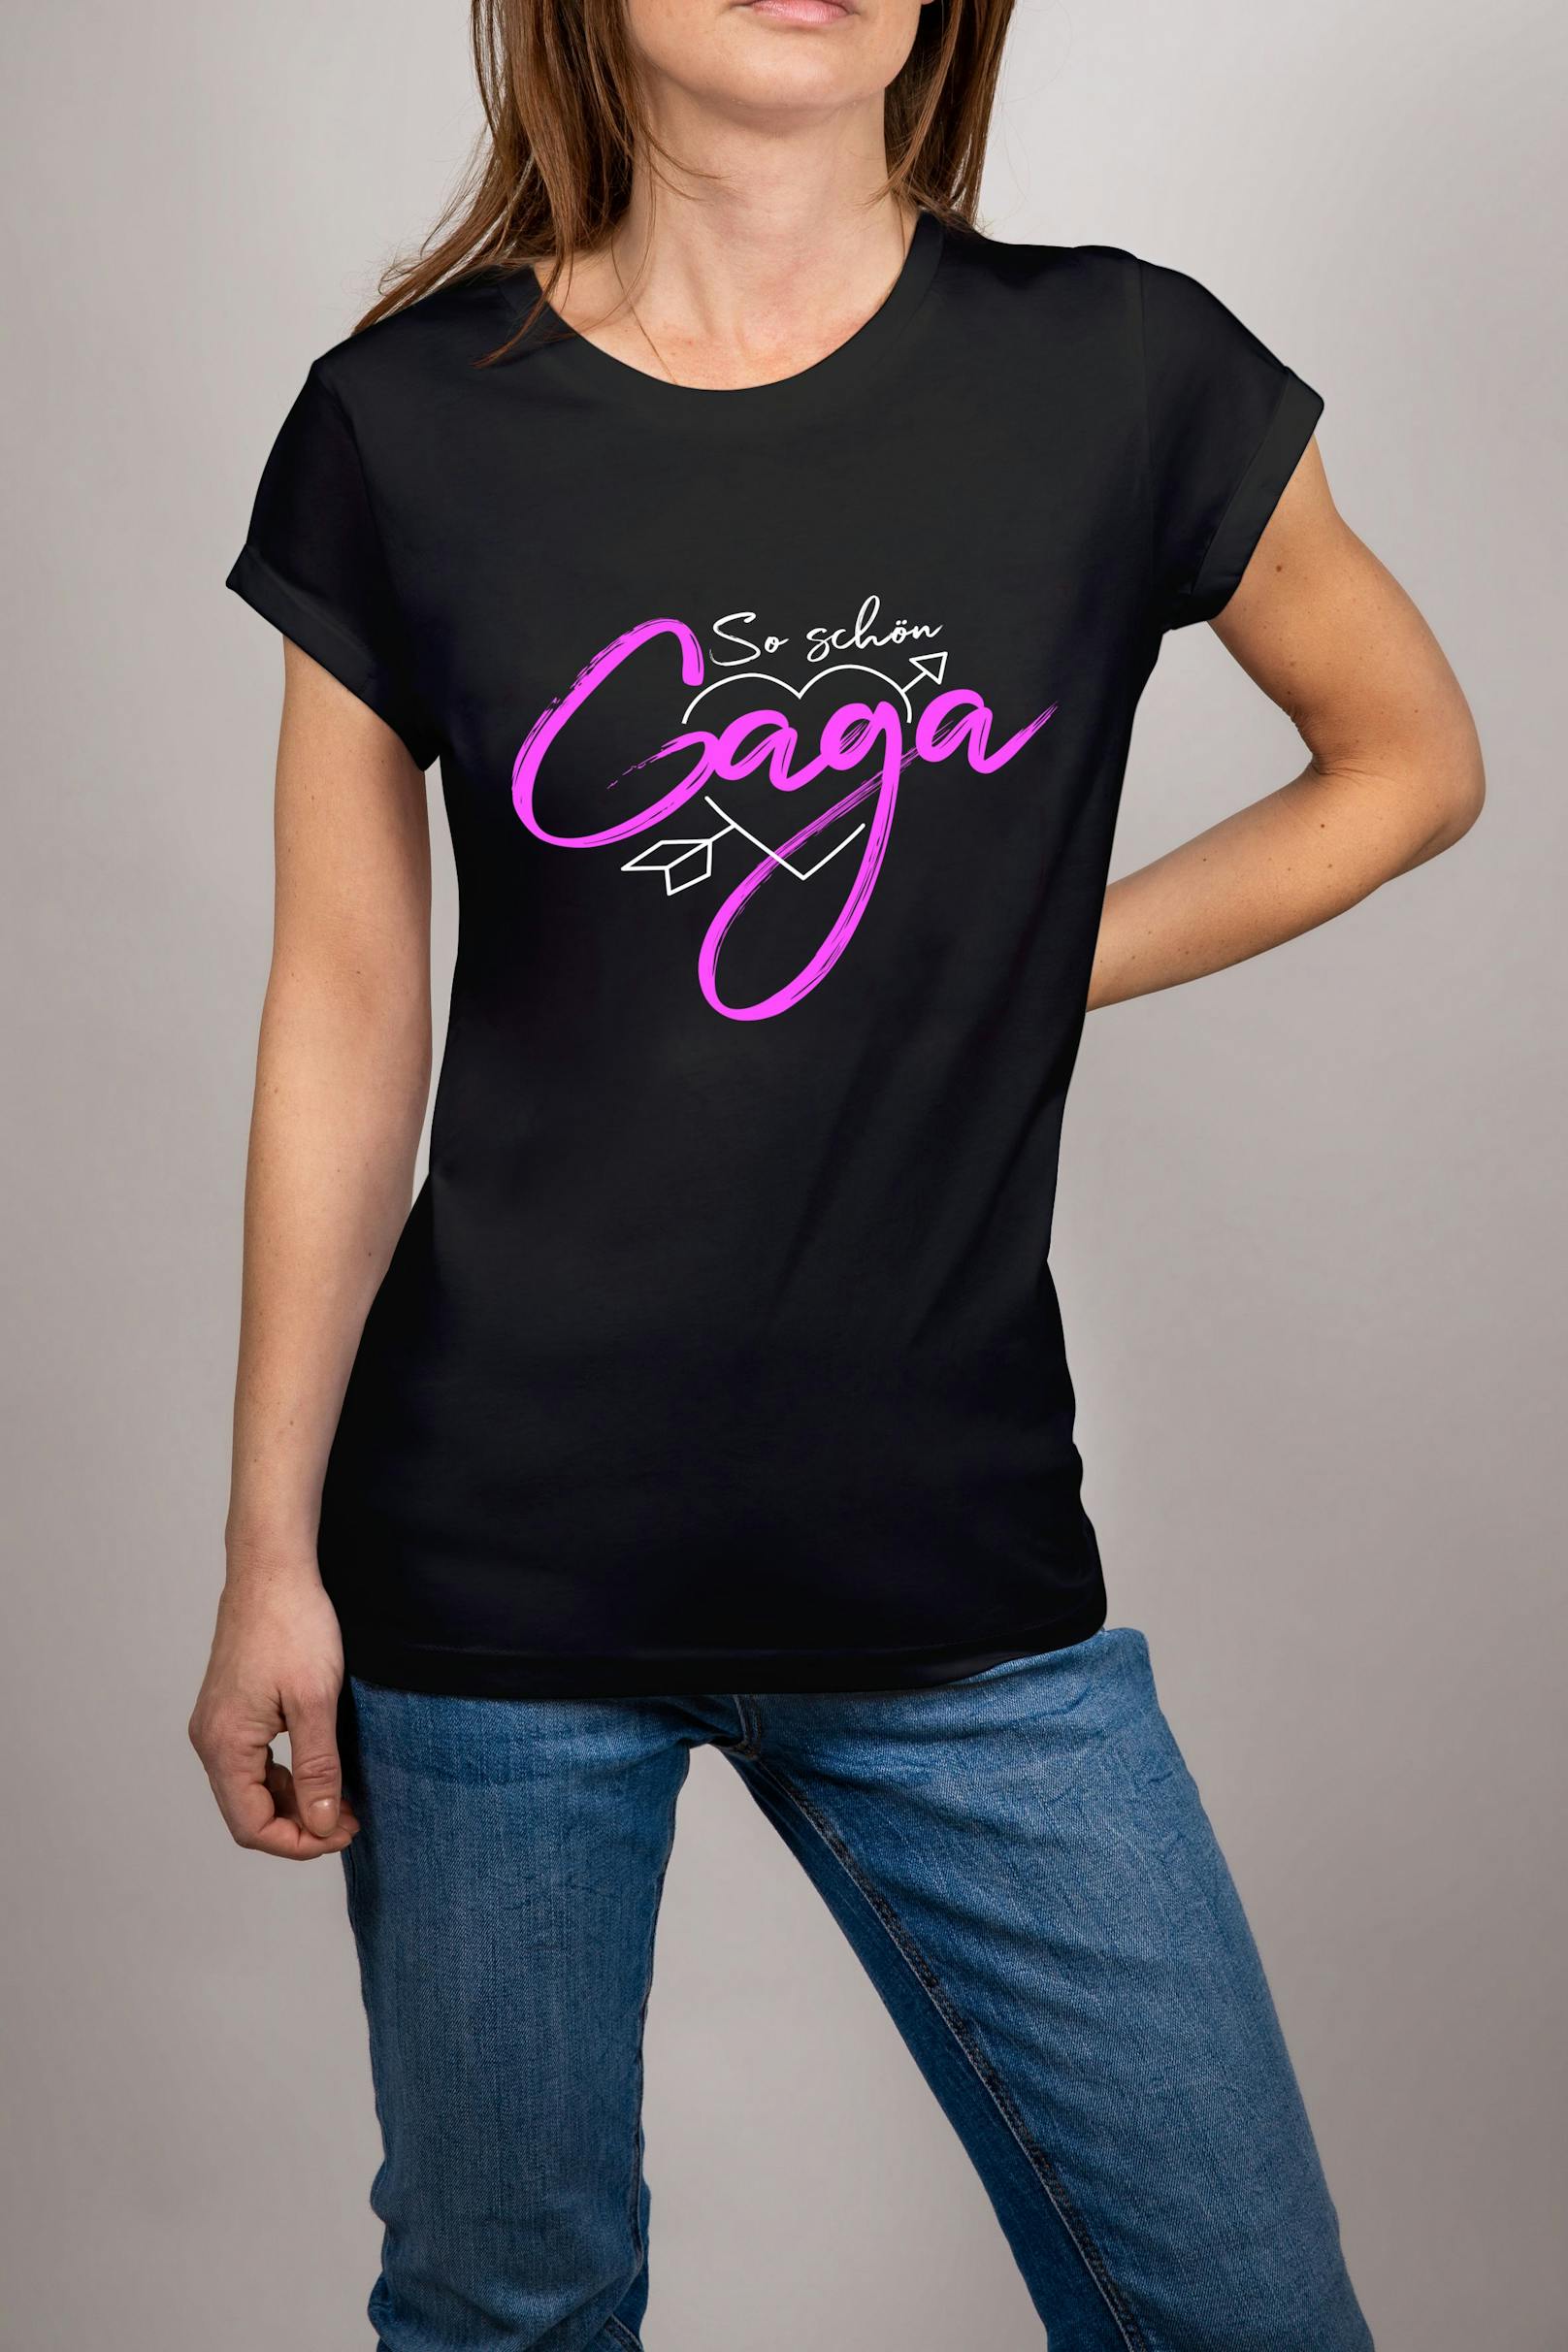 "So schön Gaga" steht auf den T-Shirts von Simone 